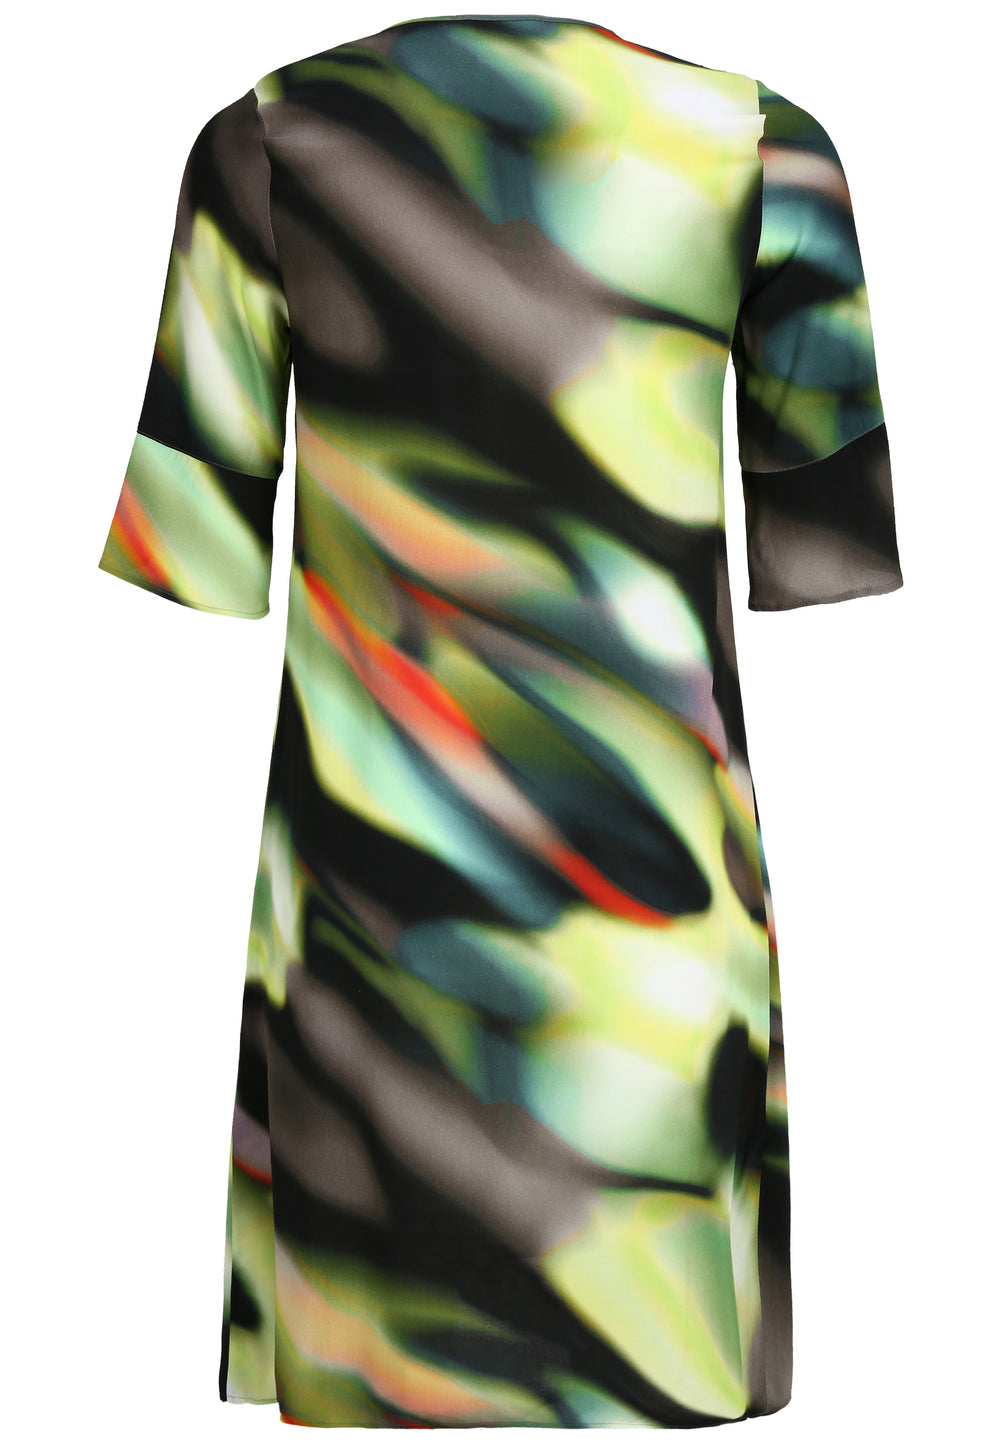 kleurig degradé jurk - doris streich - 637676 - grote maten - dameskleding - kledingwinkel - herent - leuven